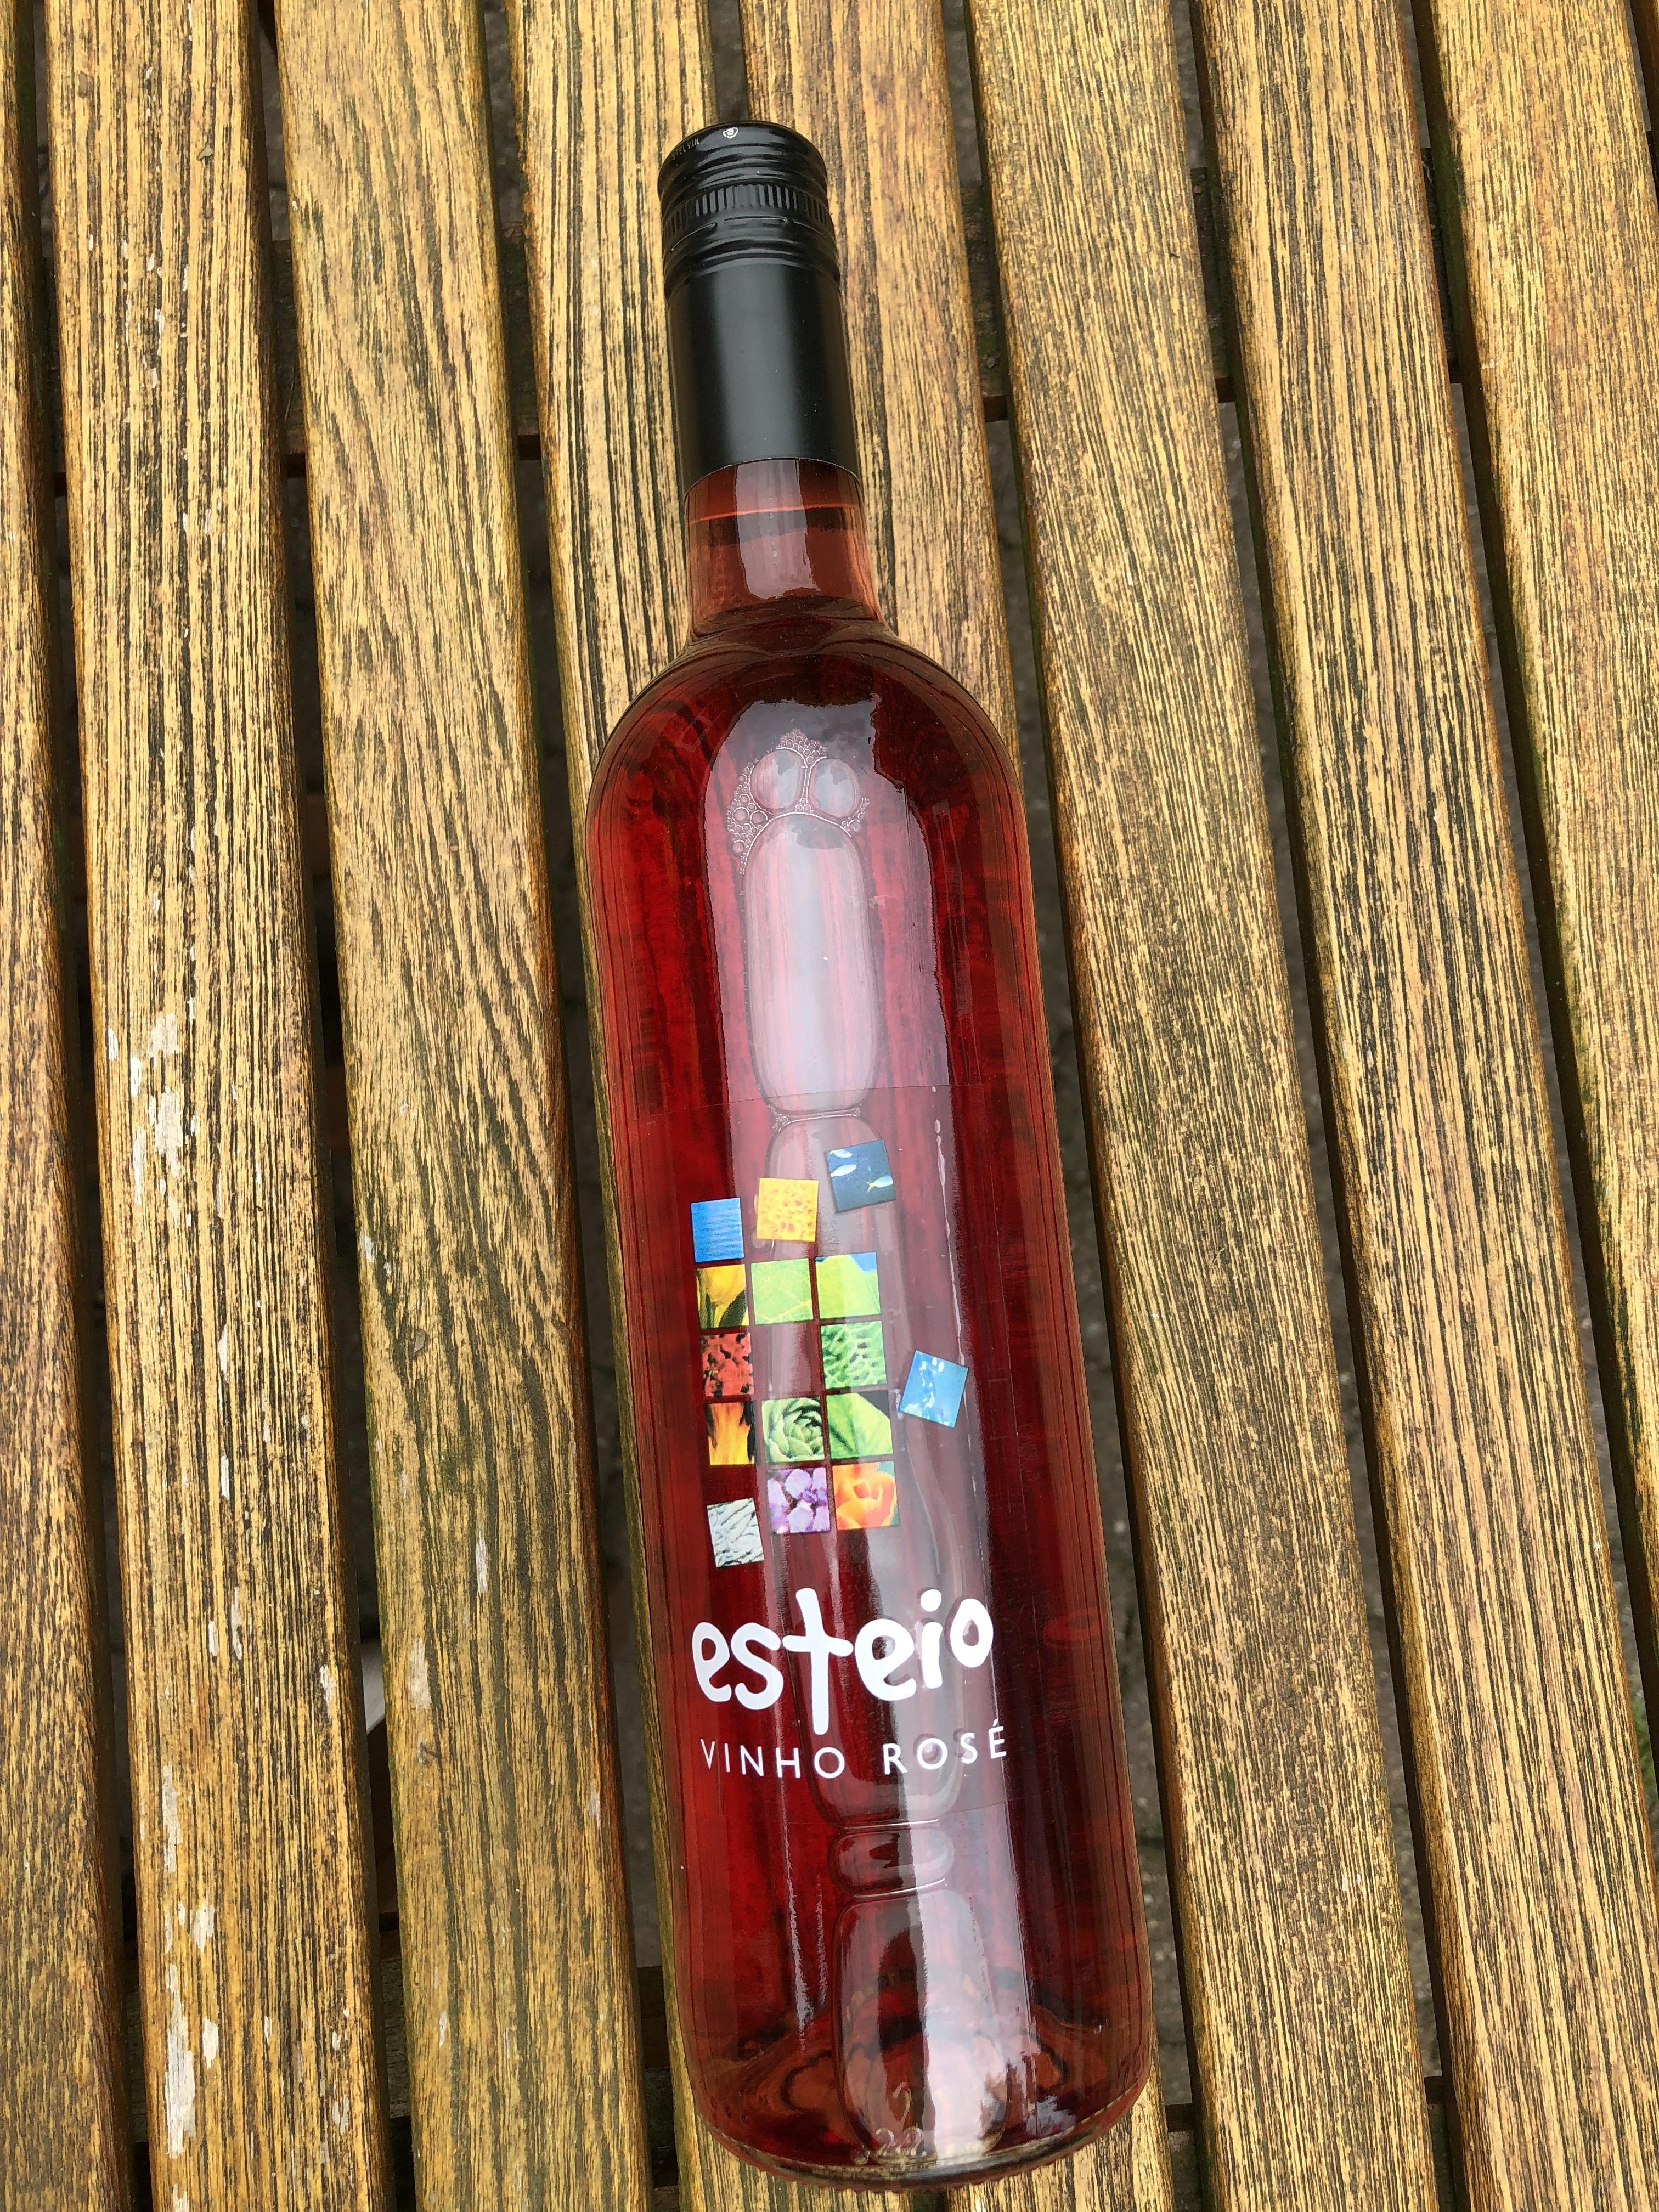 Esteio Vinho Rosé -  0,75 ltr